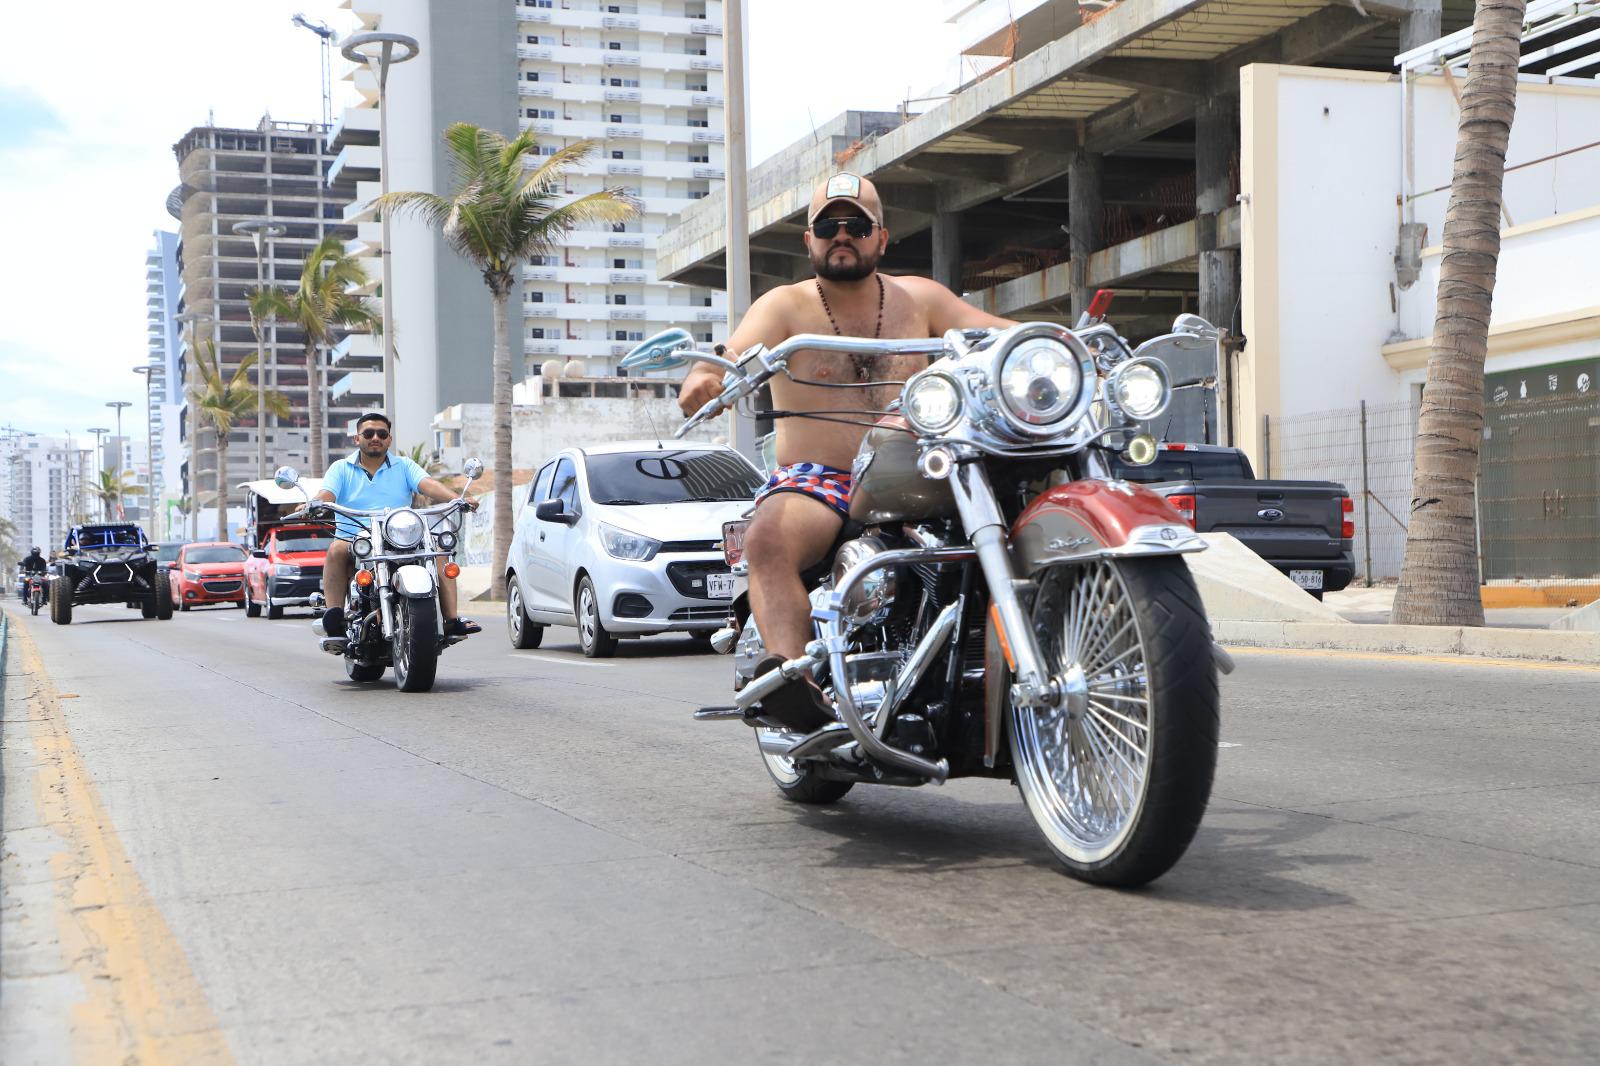 $!Caballos de acero invaden Mazatlán en Semana de la Moto